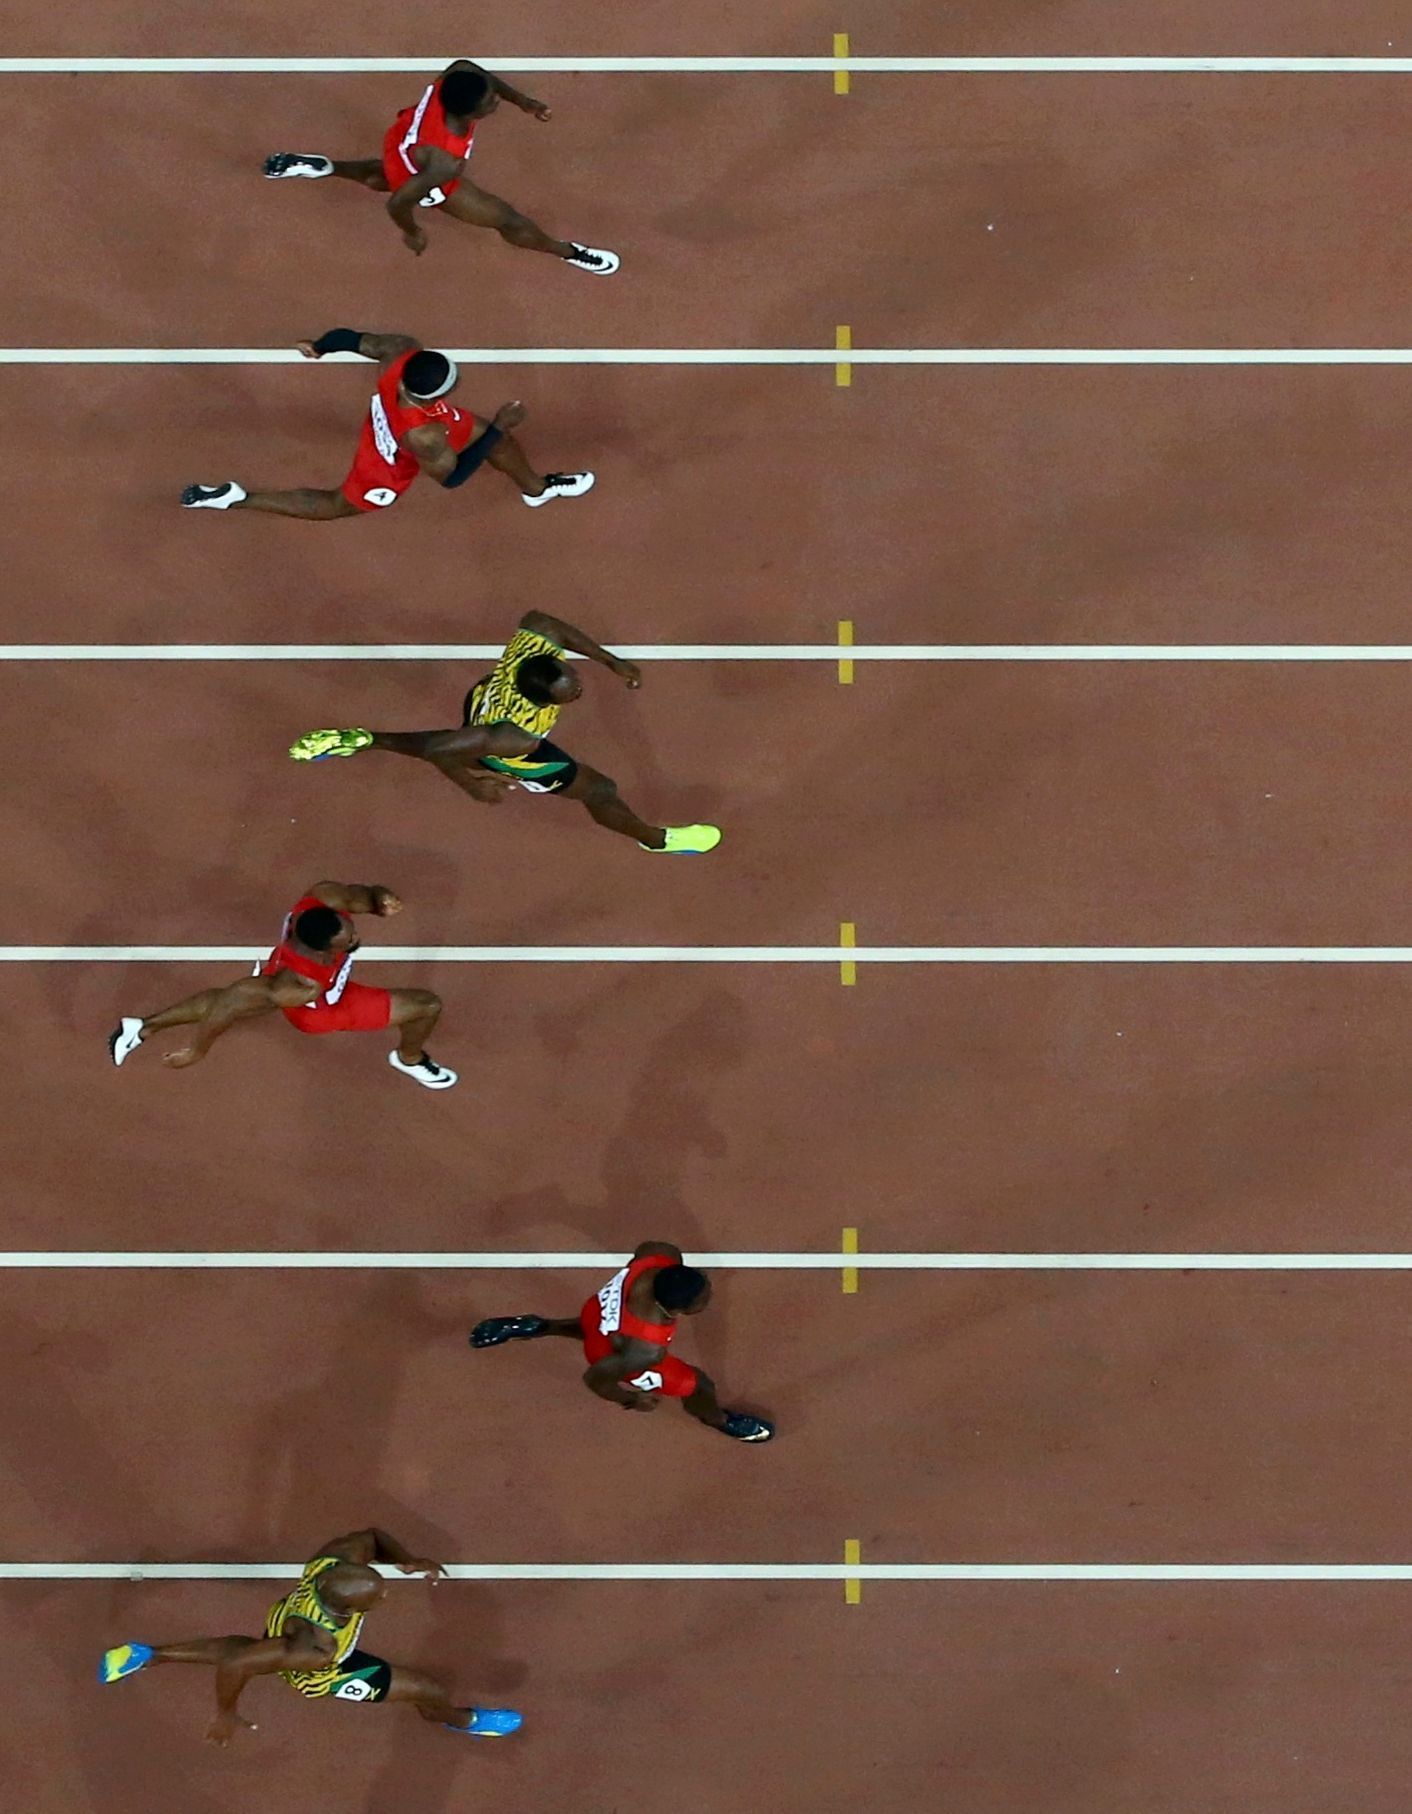 MS v atletice 2015 - neděle 23. srpna (finále běhu na 100 m - Bolt a Gatlin)